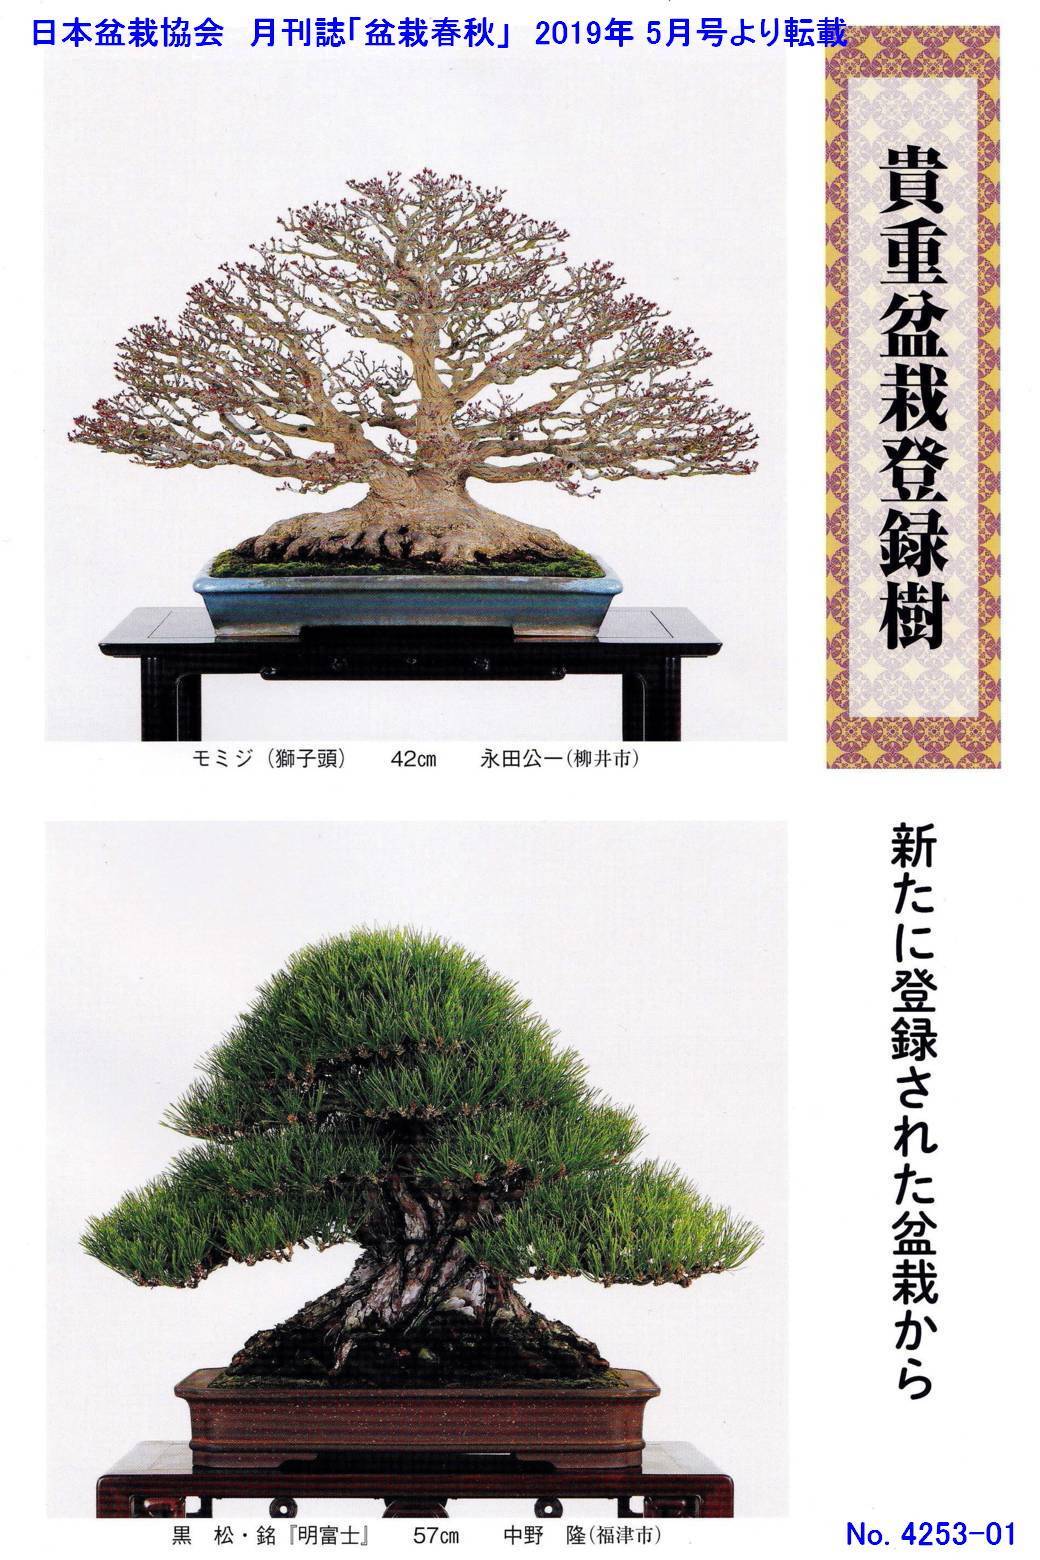 新たな「貴重盆栽登録樹」-1 - 「鶴見陶苑」の盆栽日記